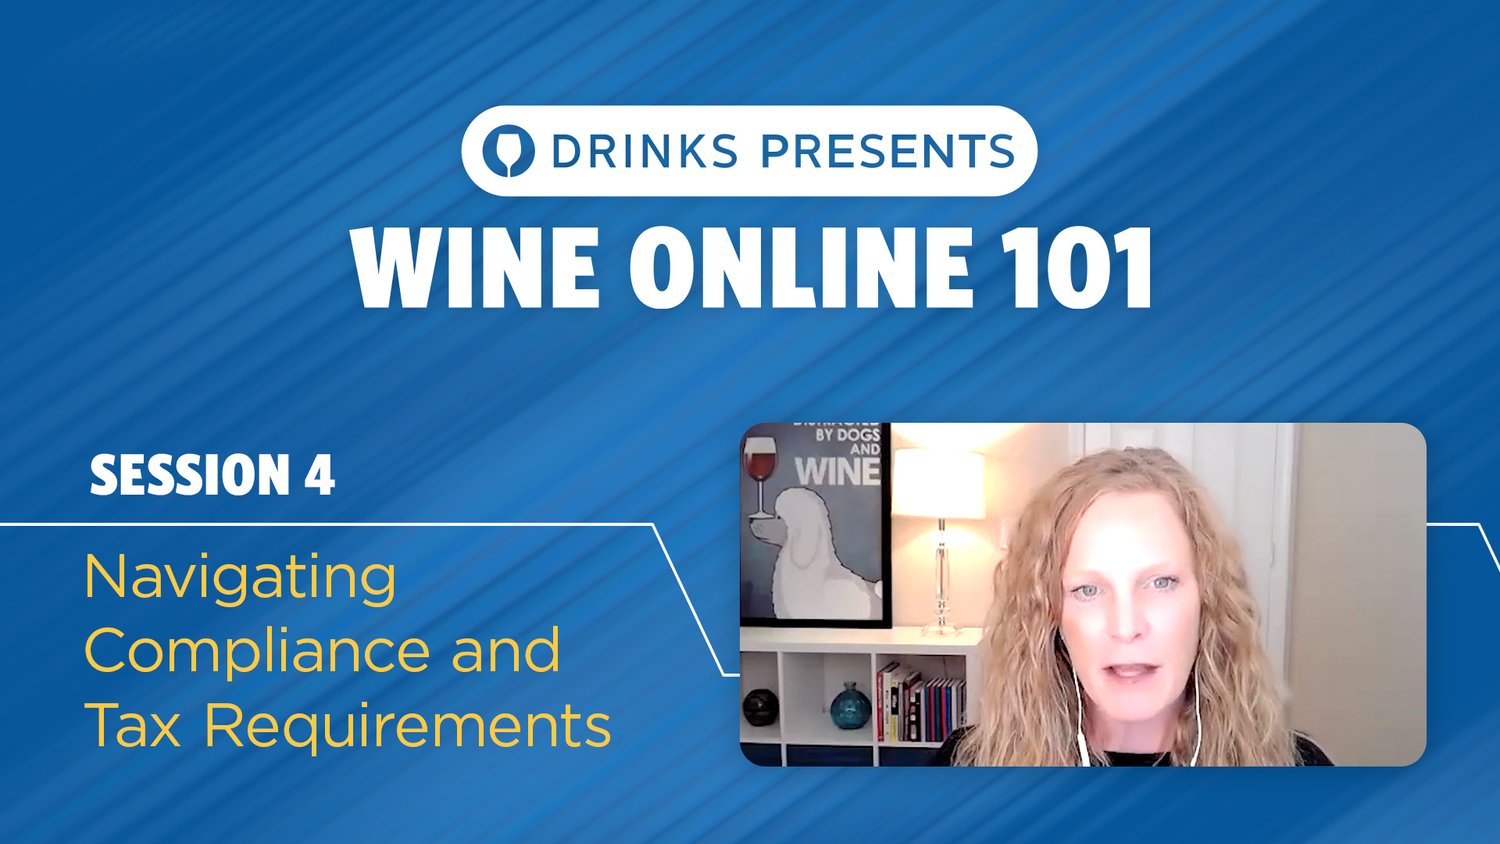 drinks-wine-online-101-title-slide-session-04